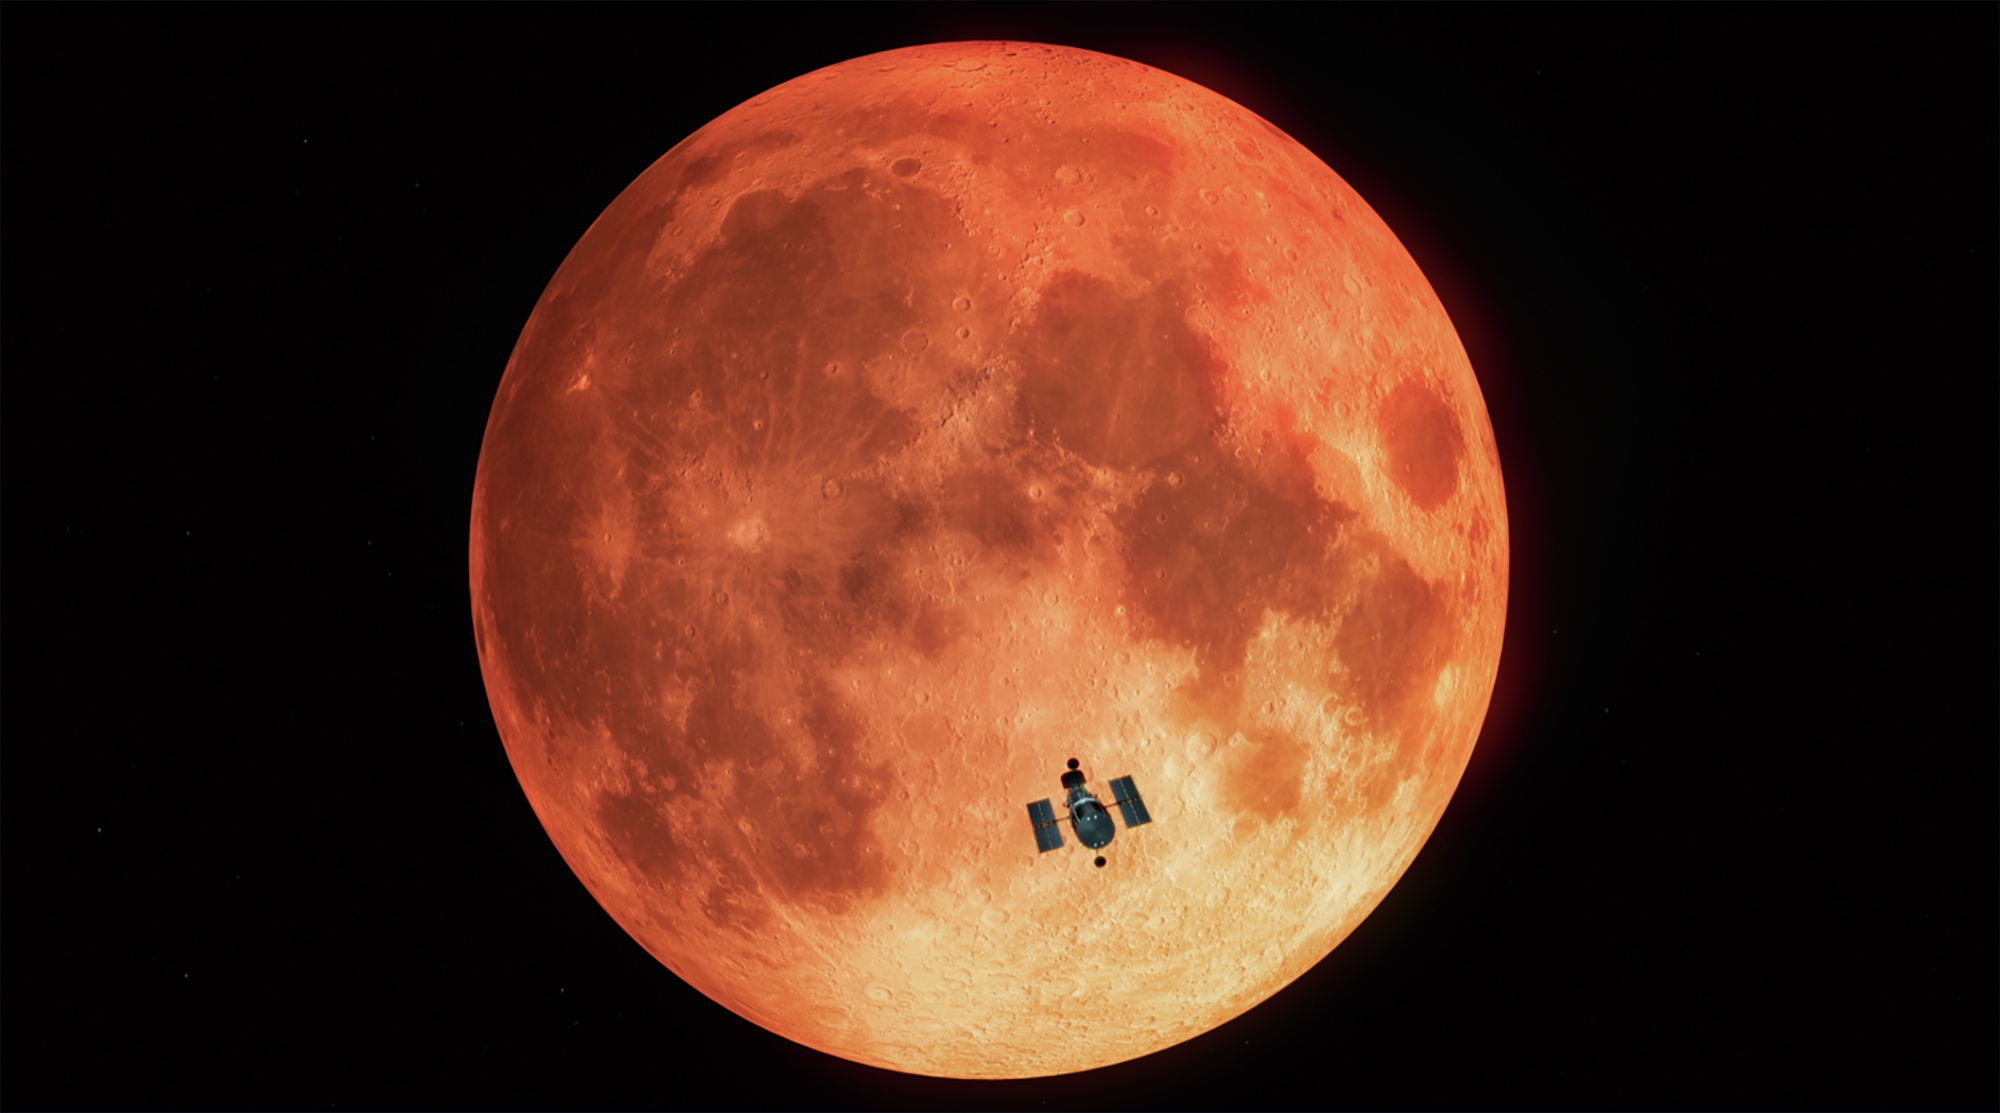 En janvier 2019, Hubble a profité d'une éclipse lunaire totale pour tester une technique d'observation qui aidera à chercher des biosignatures sur des exoplanètes semblables à la Terre. © M. Kornmesser, Nasa, ESA